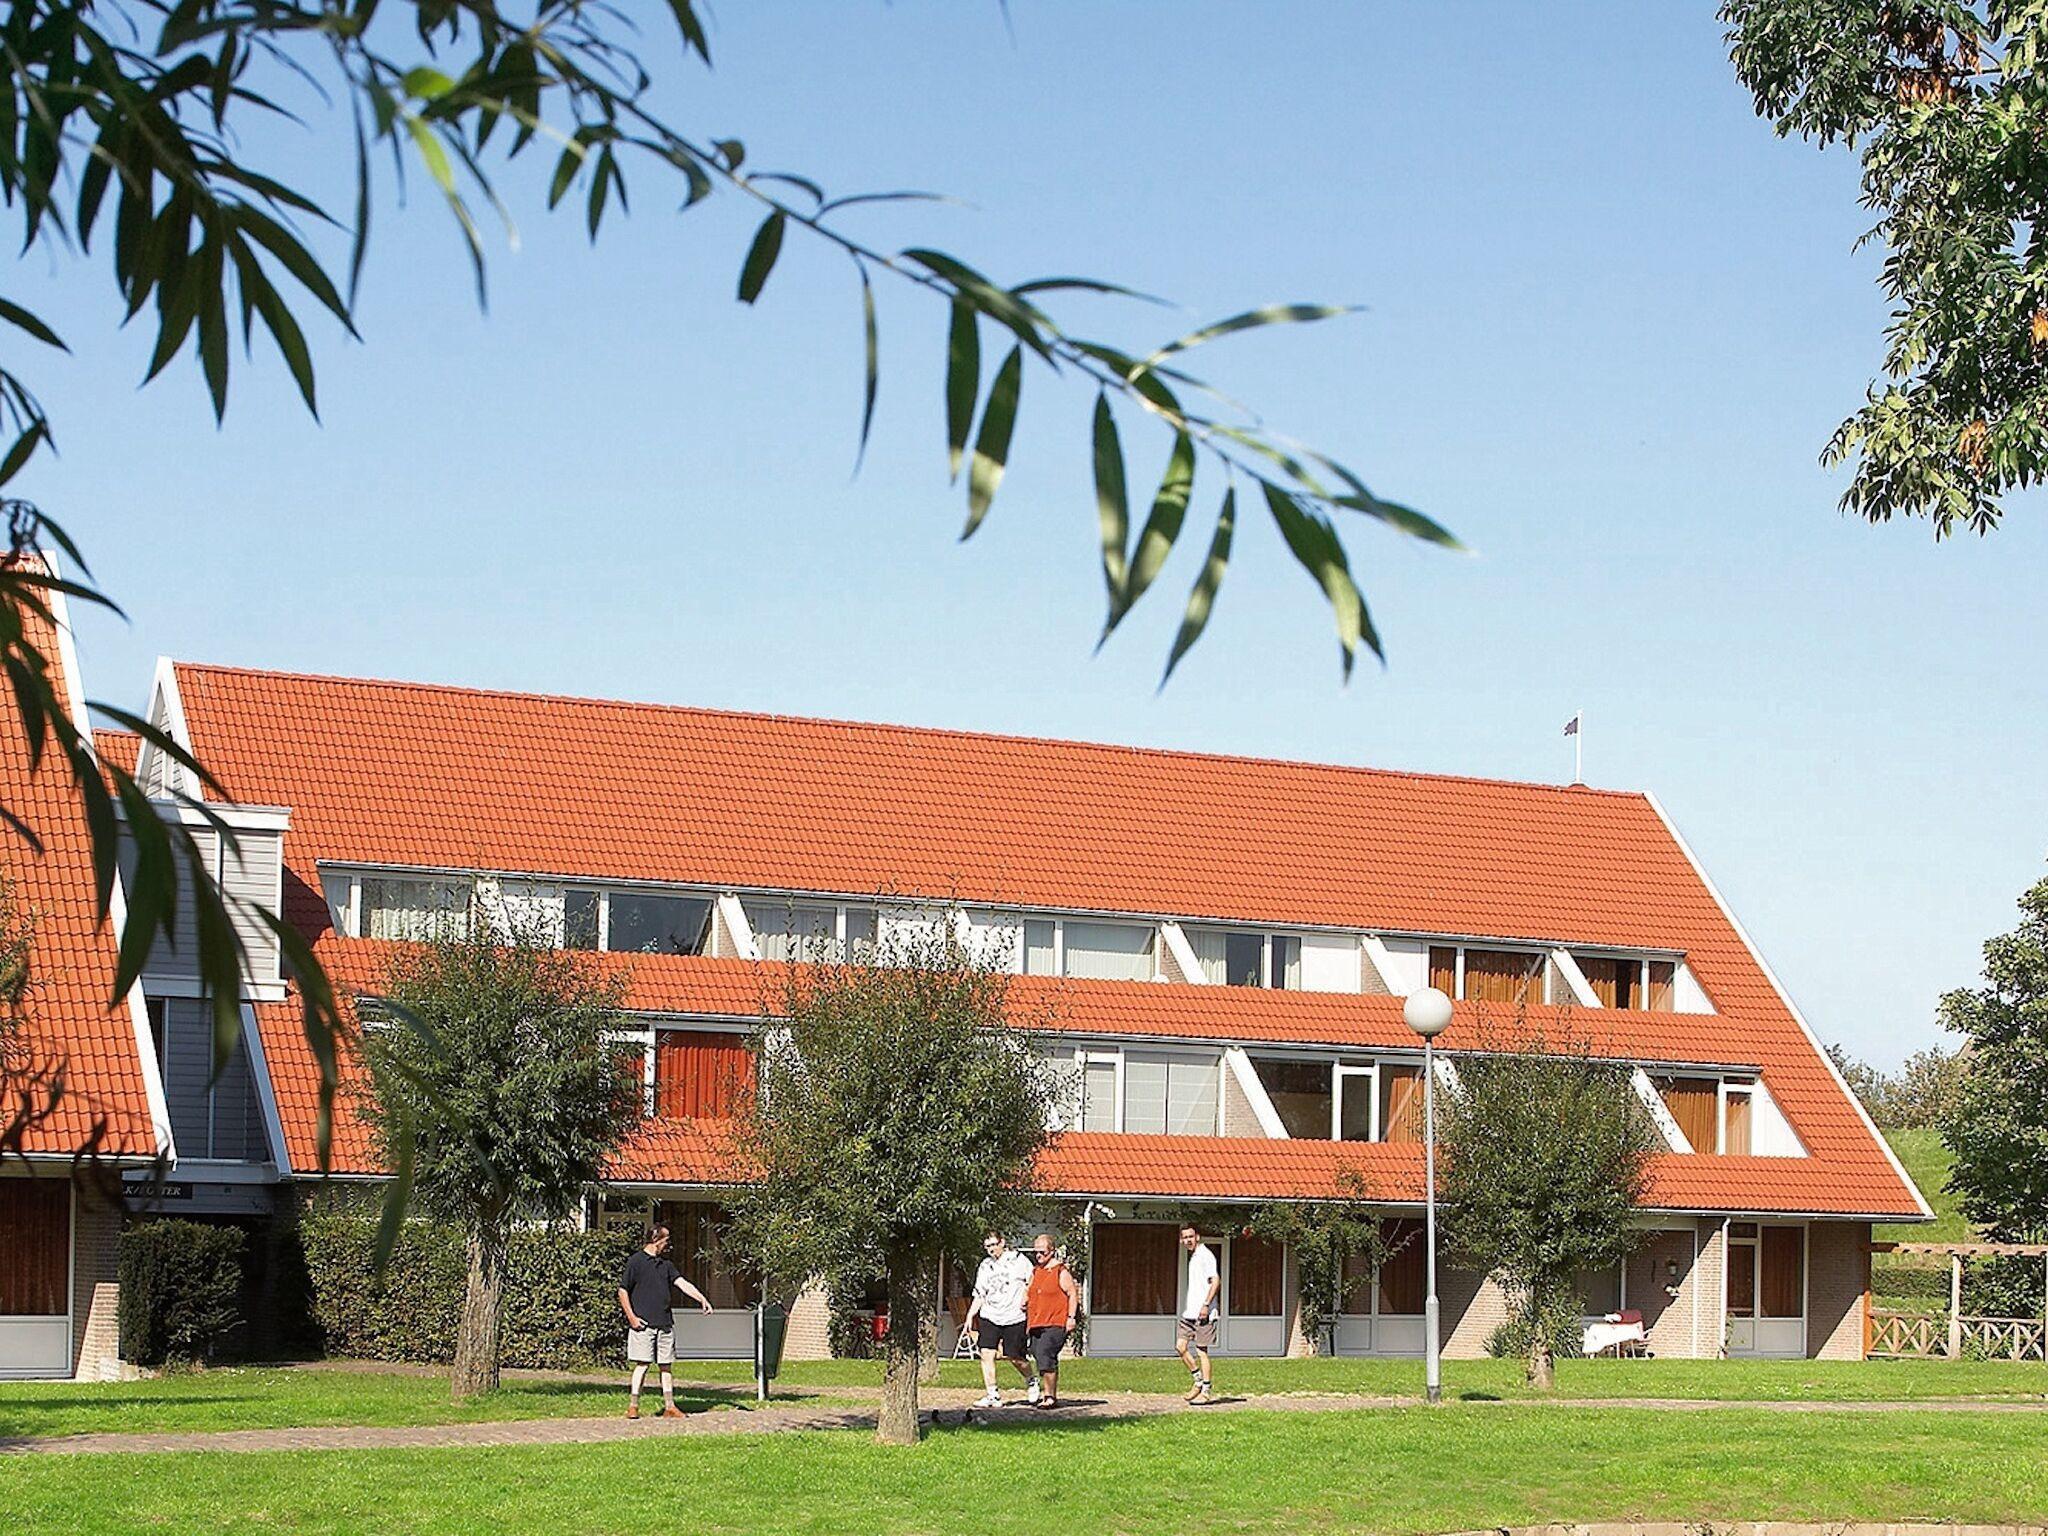 Gerestyld appartement voor twee personen nabij het Grevelingenmeer op vakantiepark Aquadelta